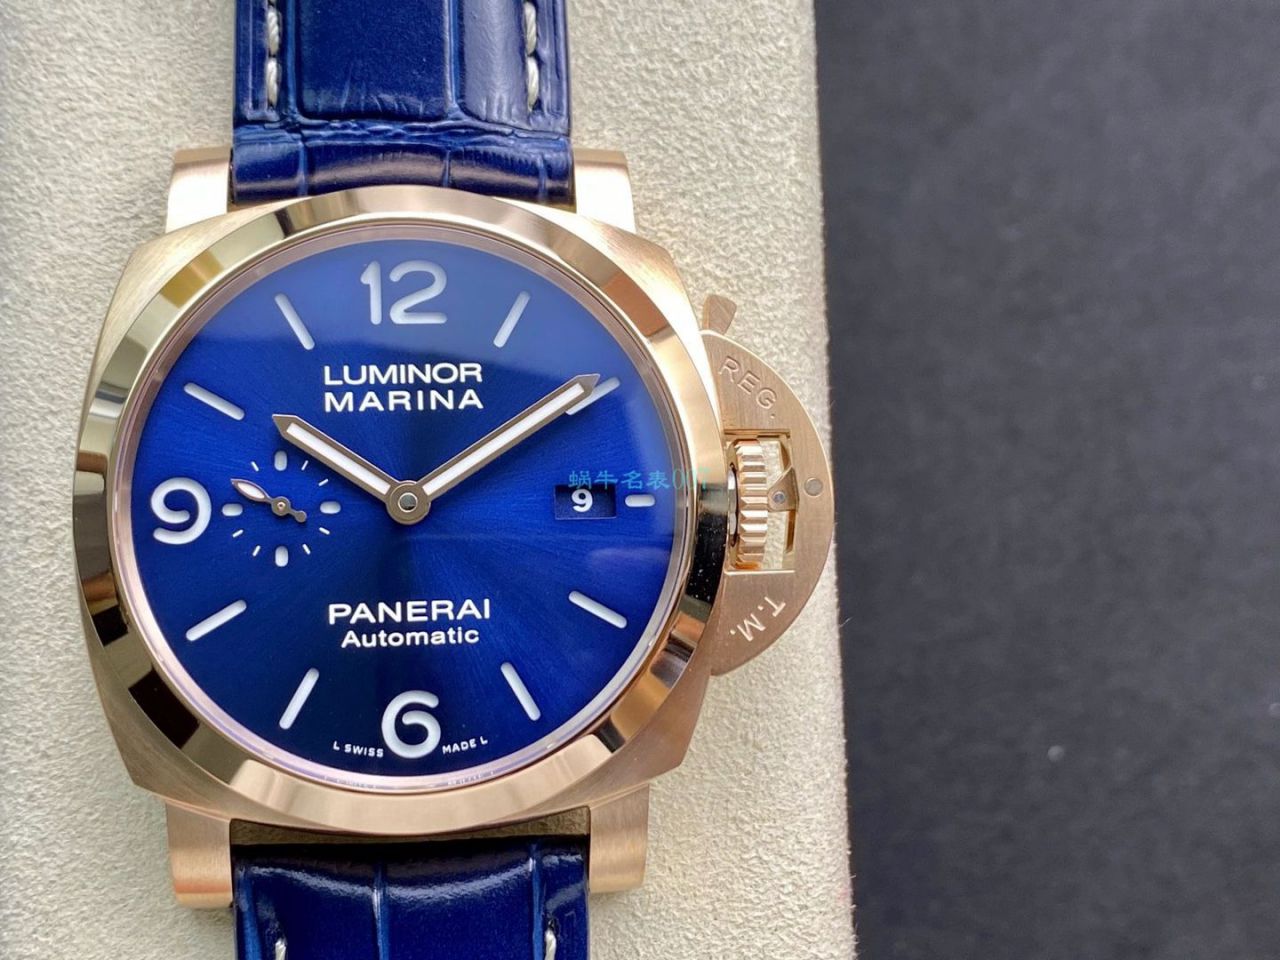 VS厂沛纳海1比1高仿手表LUMINOR庐米诺红金PAM01112腕表 